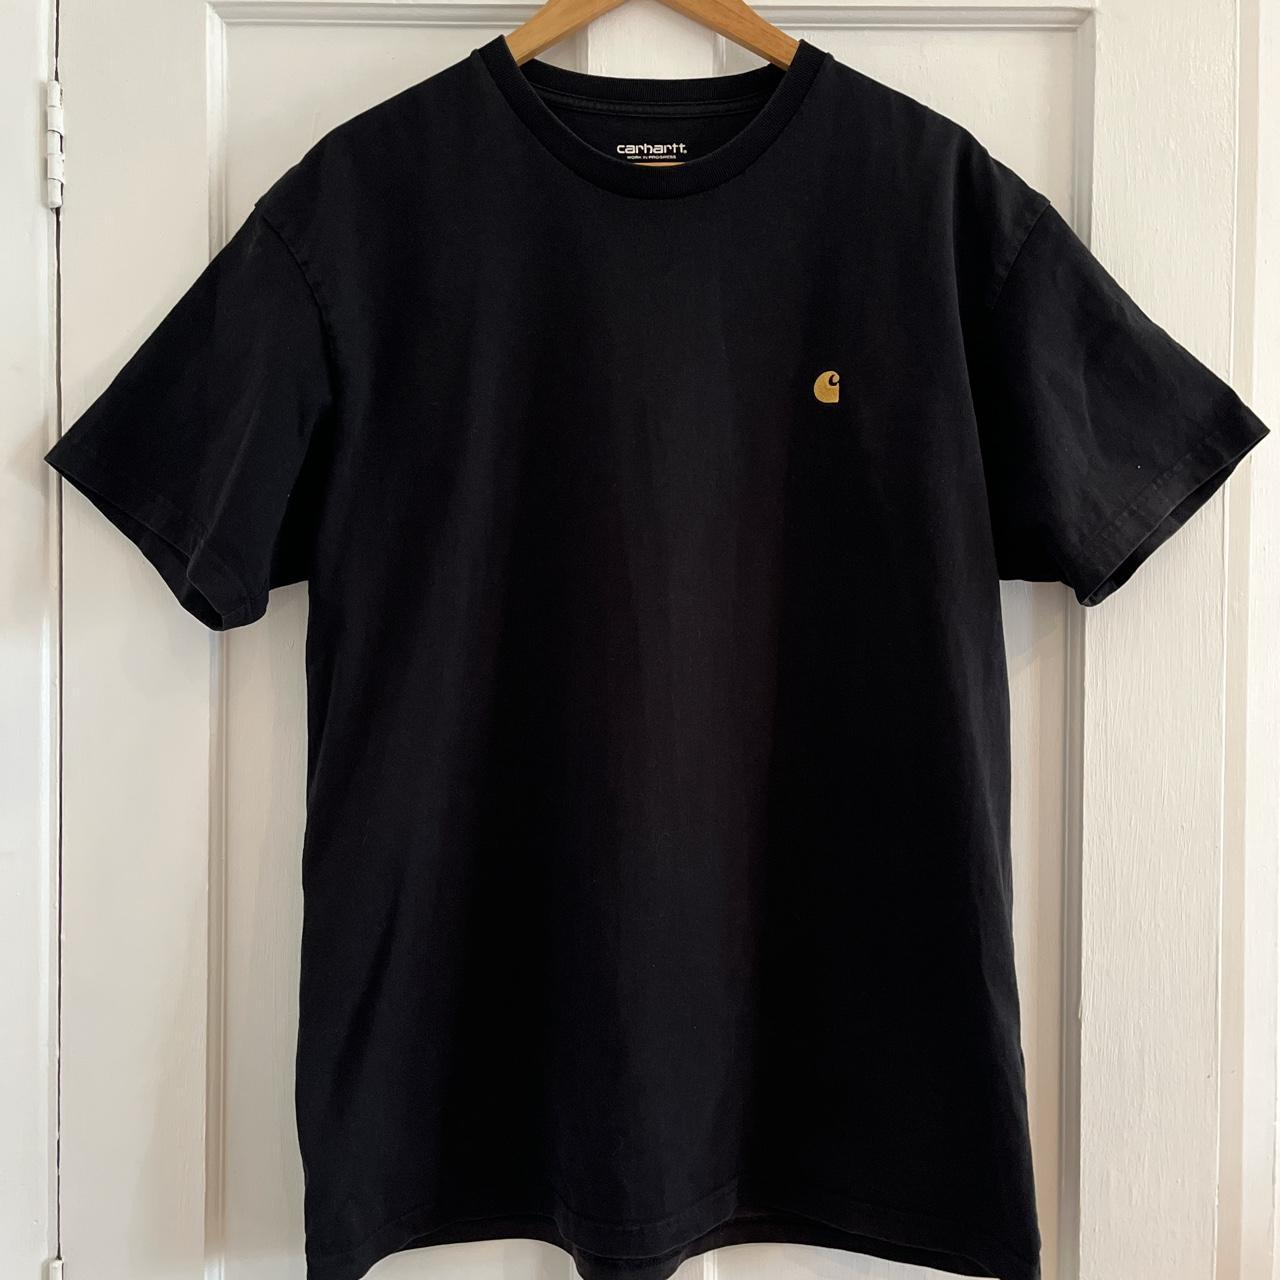 Carhartt T-shirt Men’s short sleeved tee in black... - Depop